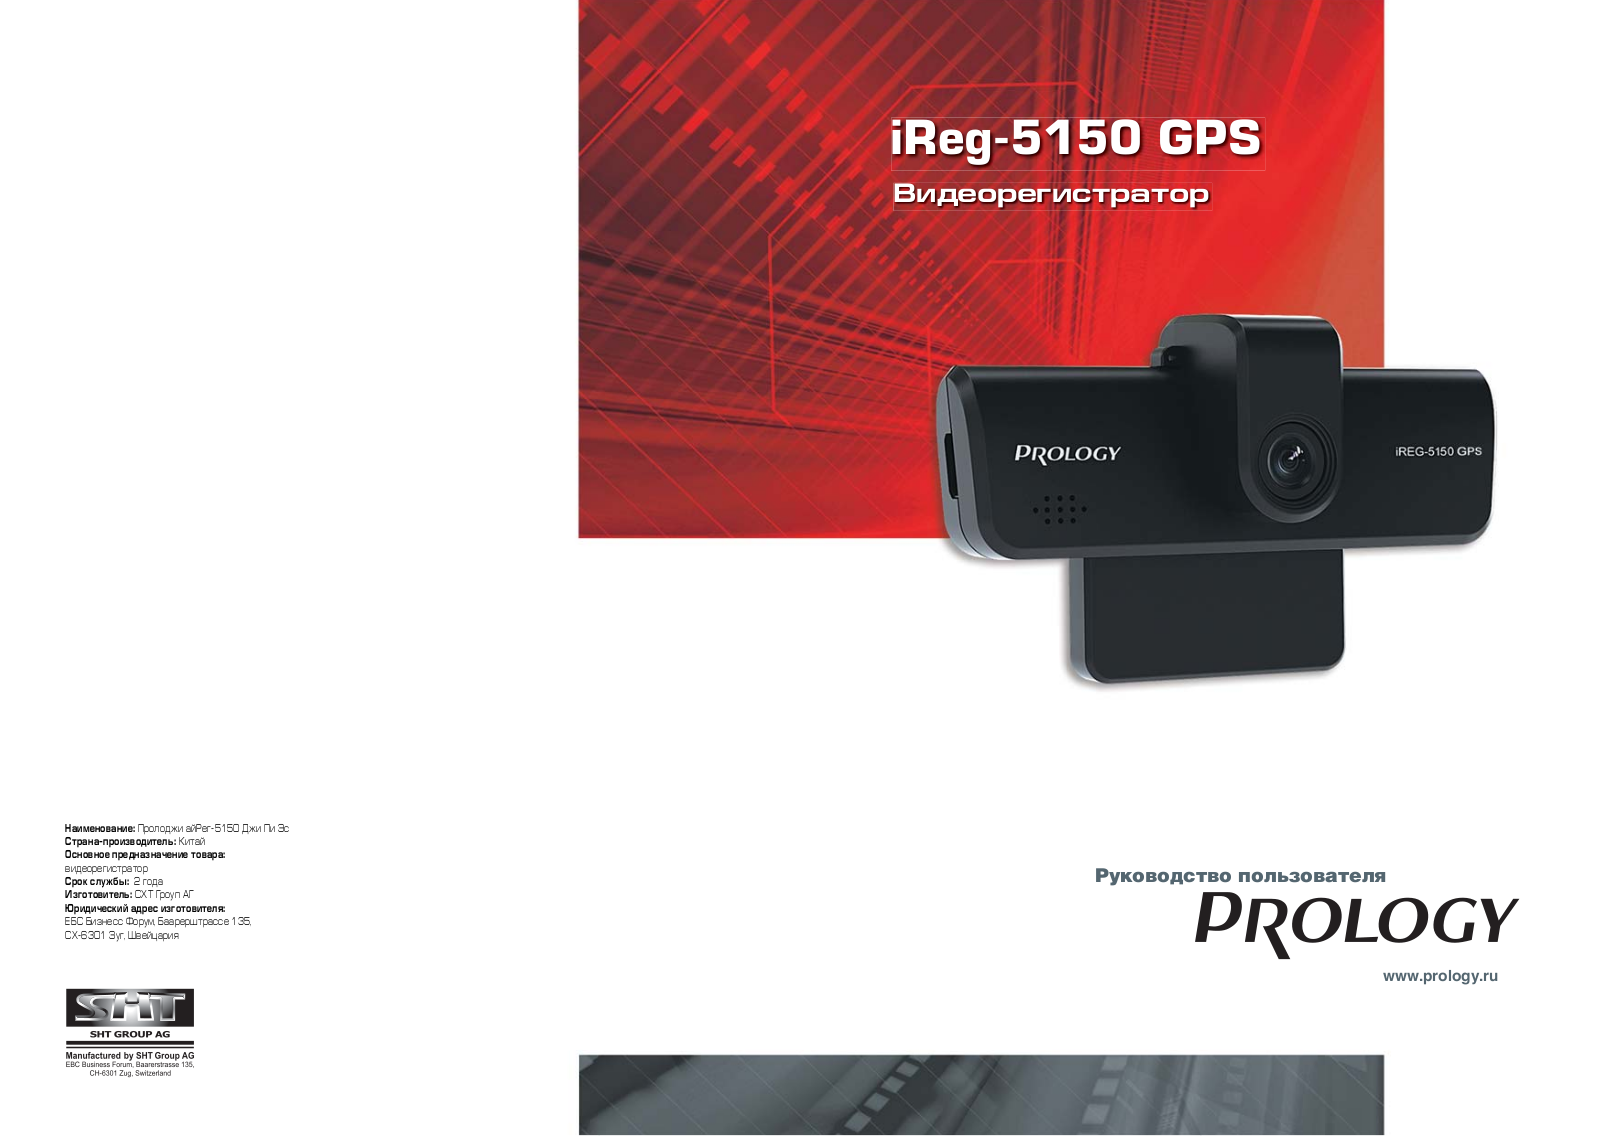 Prology iReg-5150 GPS User Manual